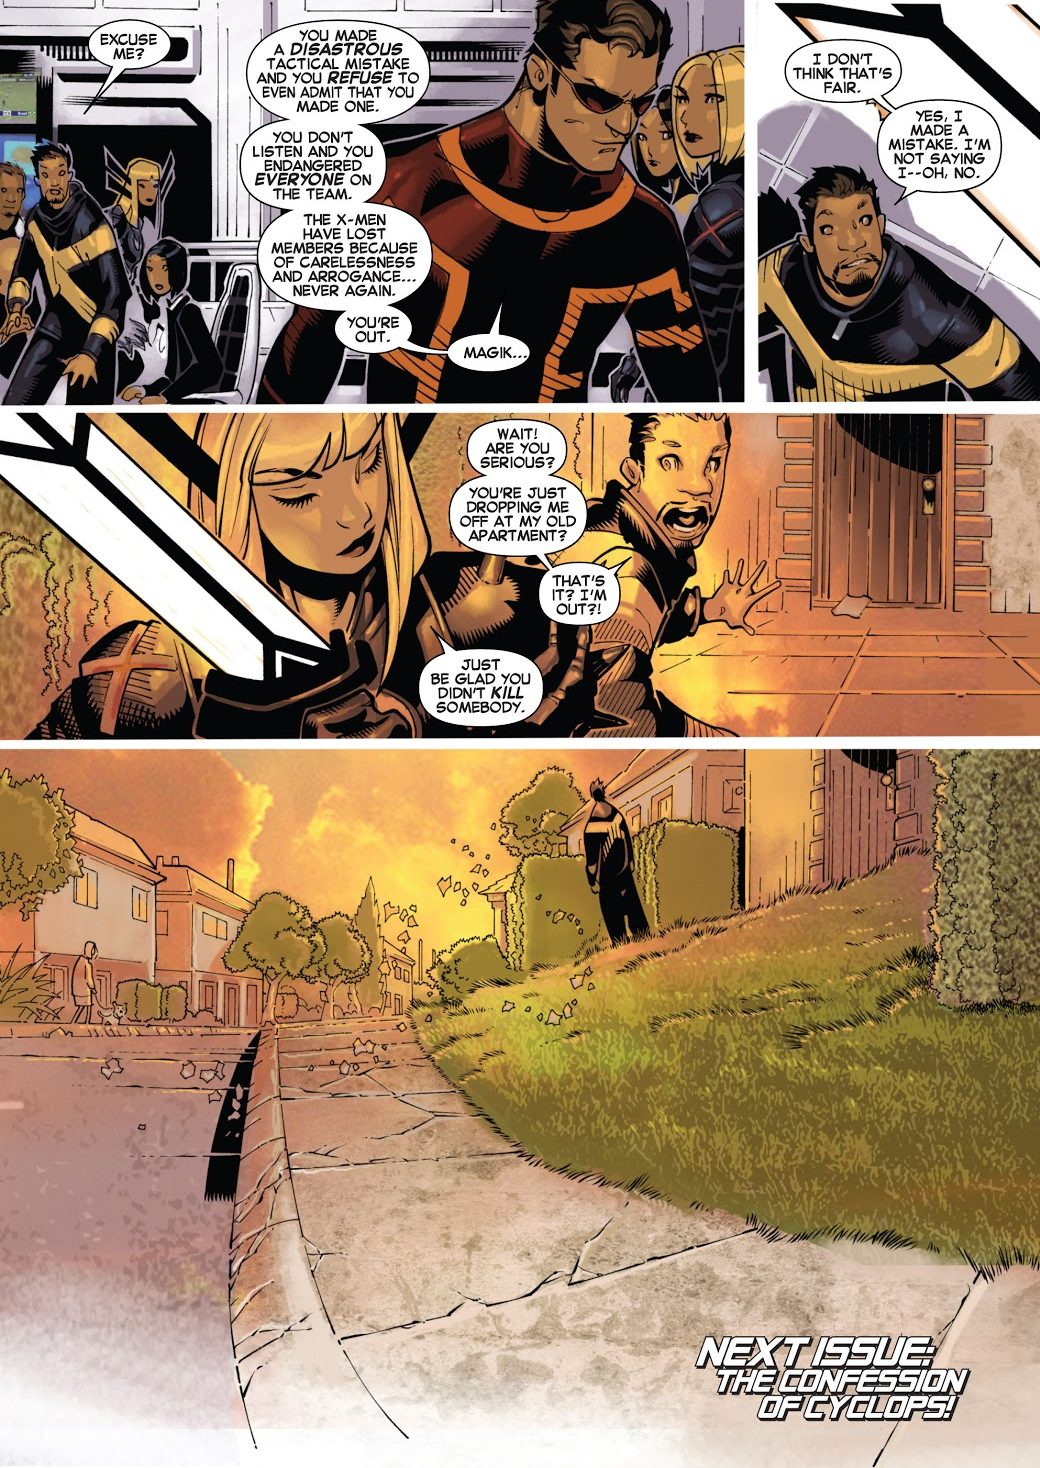 From – Uncanny X-Men Vol. 3 #19